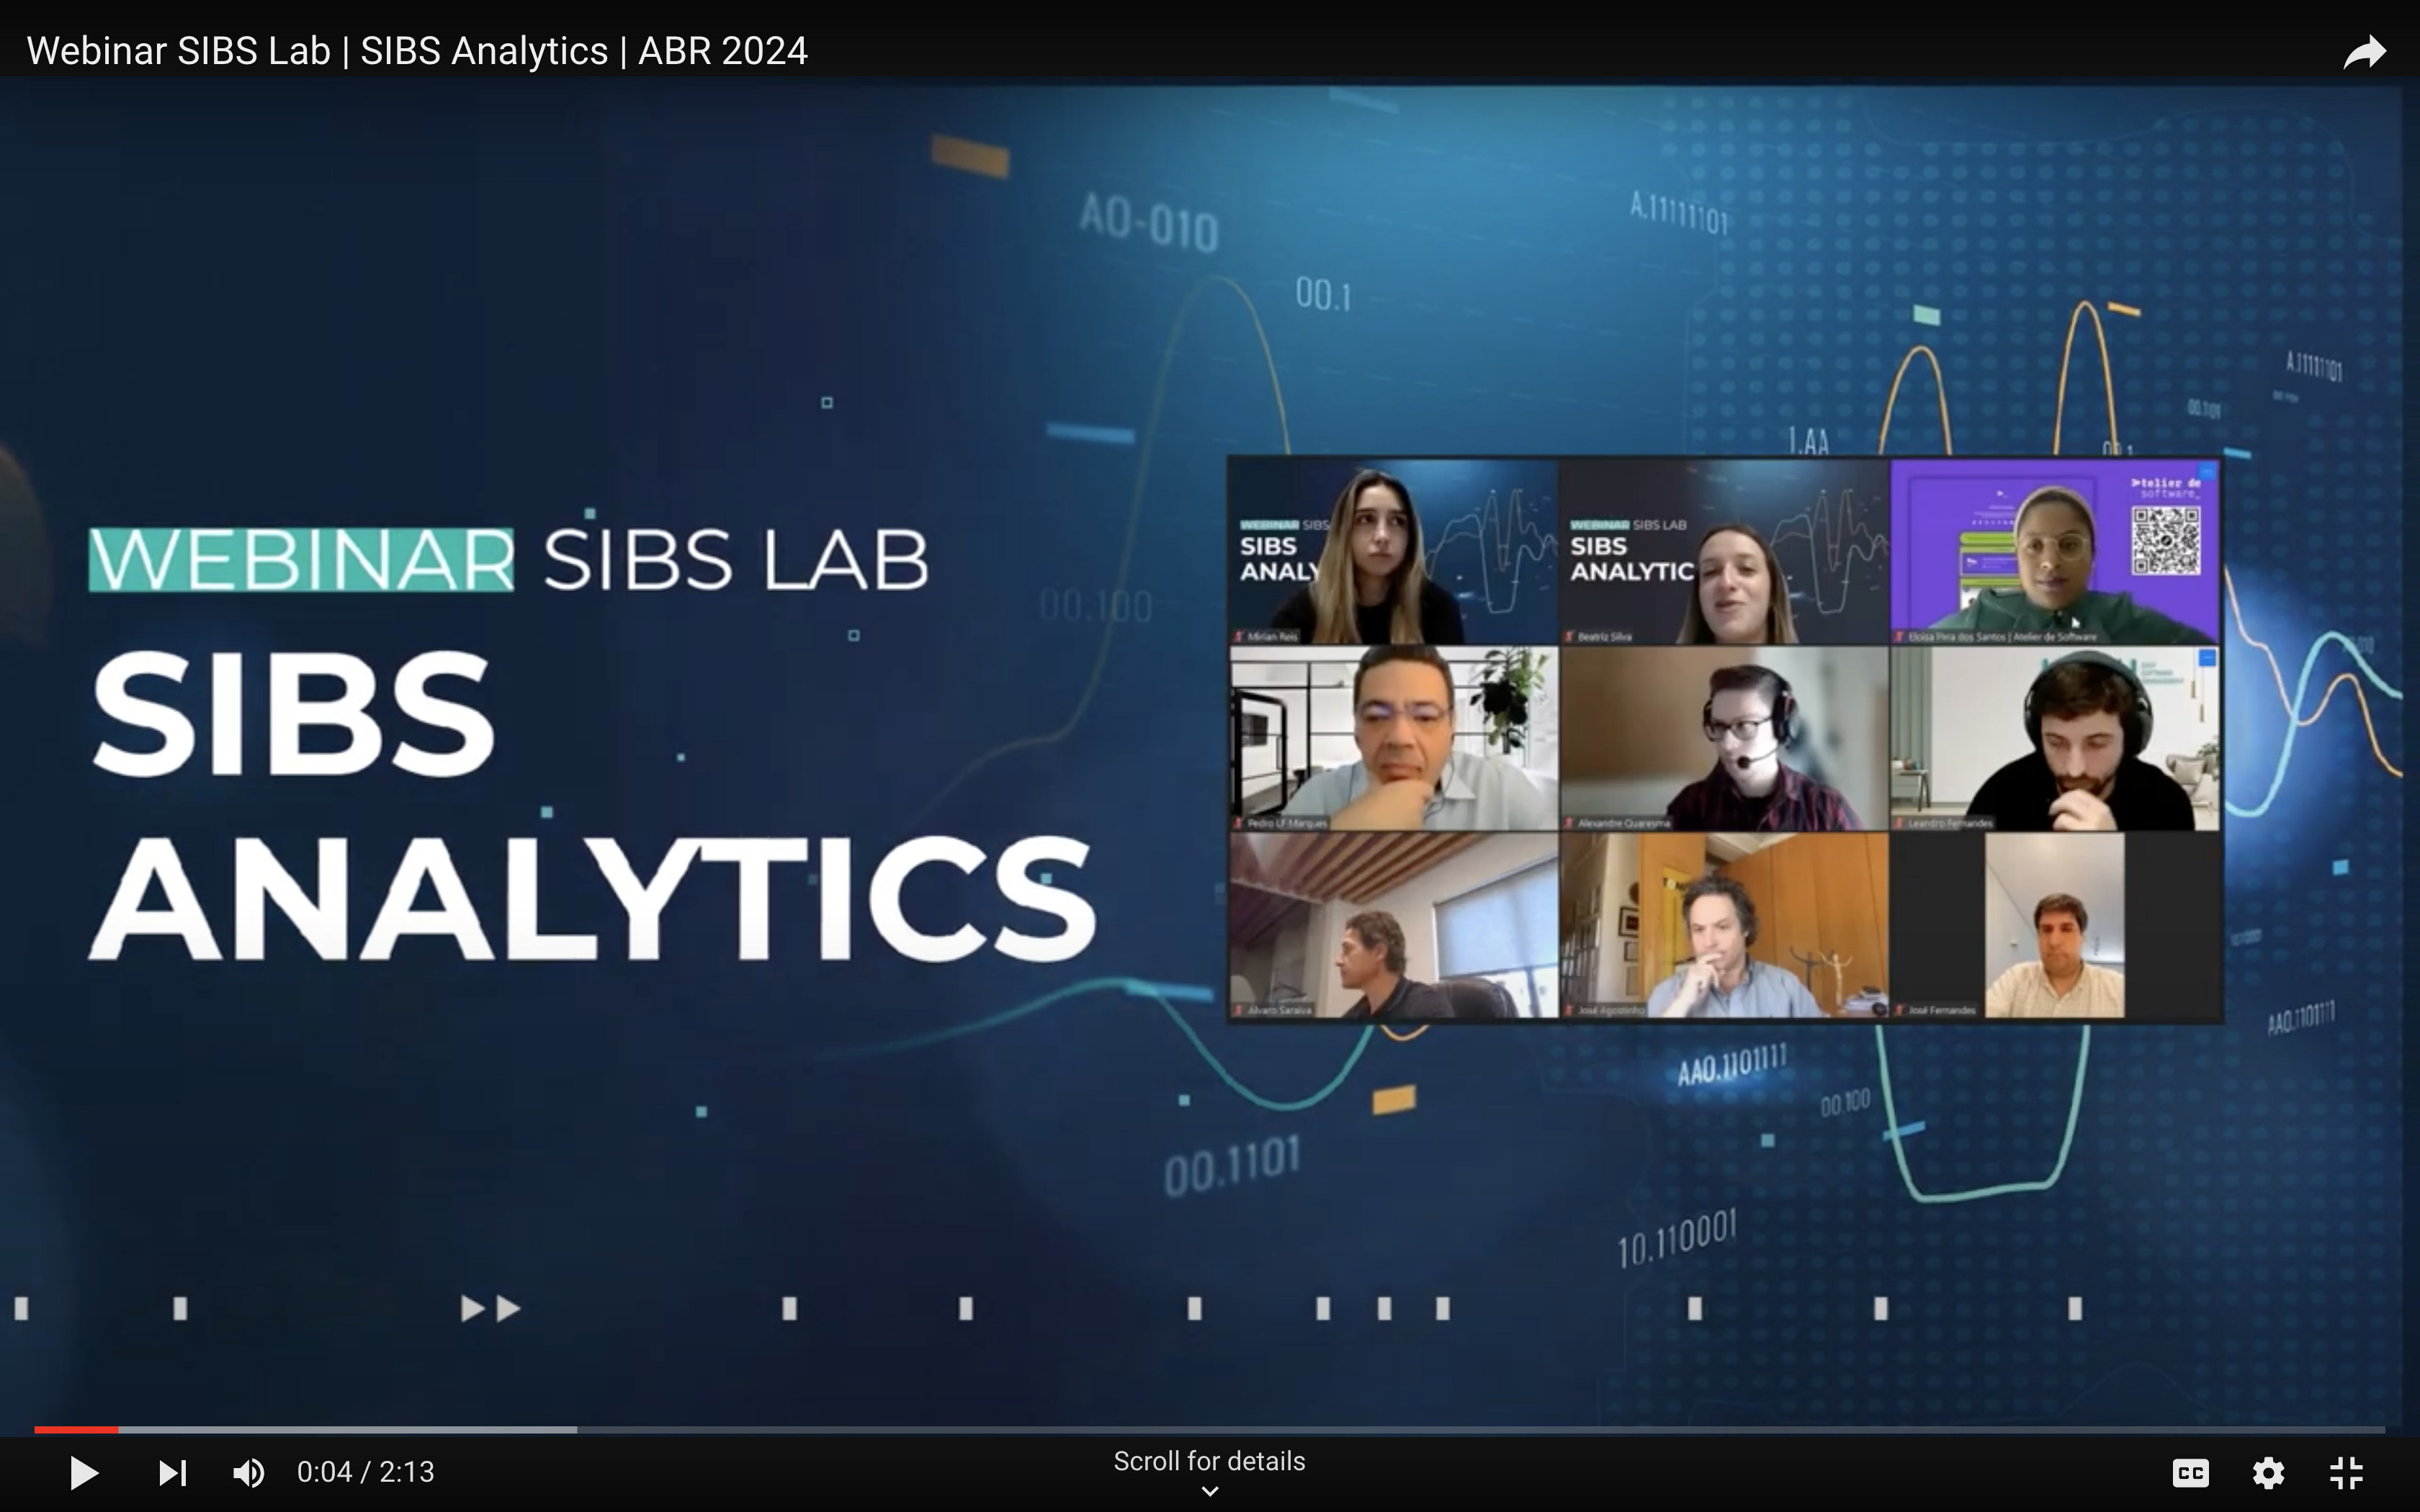 SIBS Lab webinar